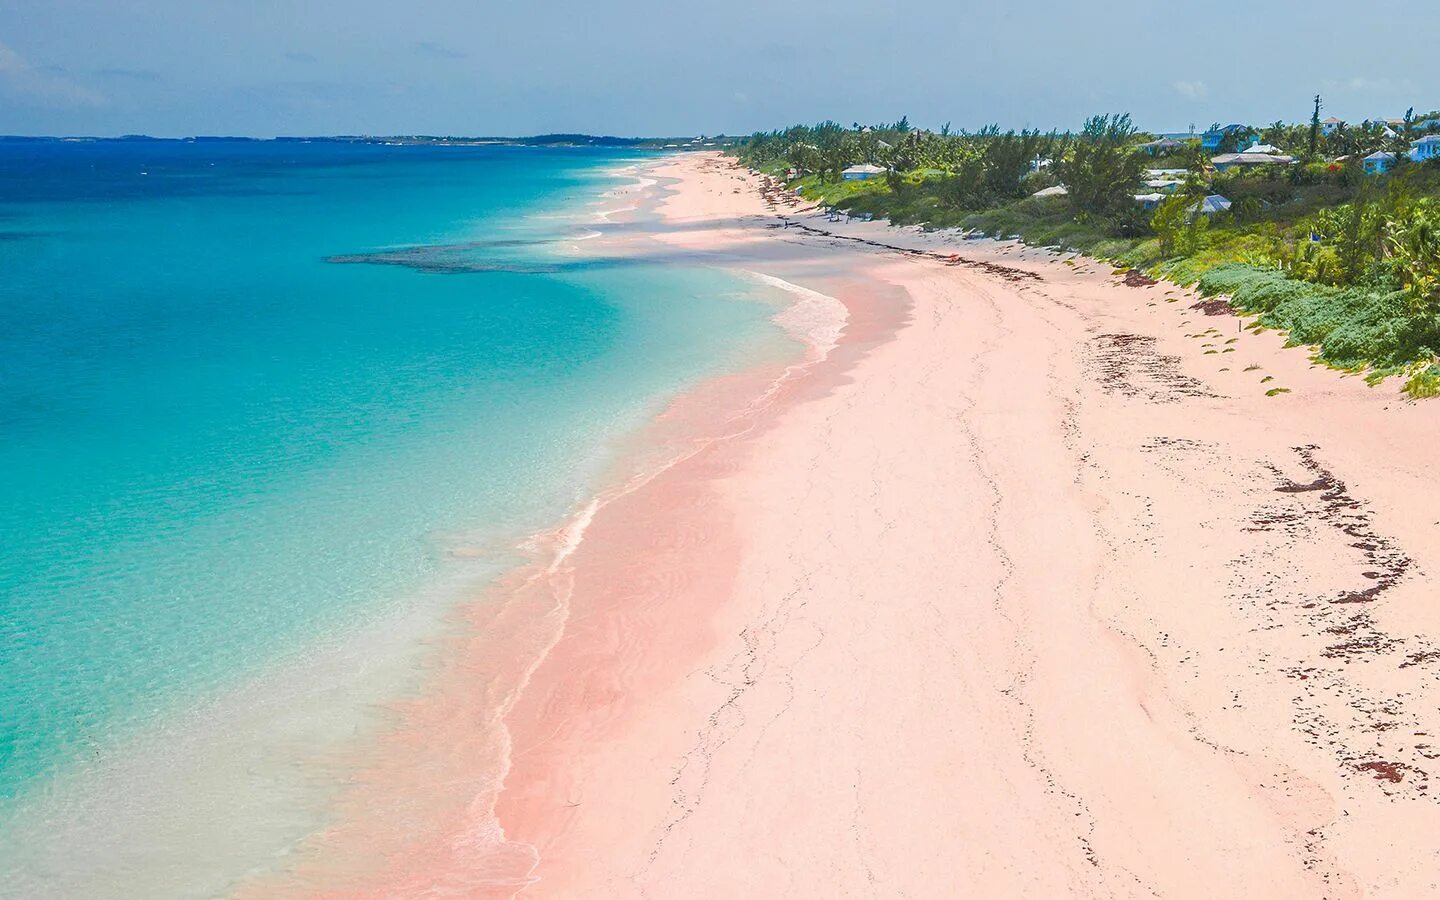 Розовый пляж. Остров Харбор, Багамы. Пинк-Сэндс-Бич, Багамские острова. Pink Sands Beach Багамские острова. Пляж Пинк-Сэнд-Бич, Харбор, Багамские острова. Harbor island